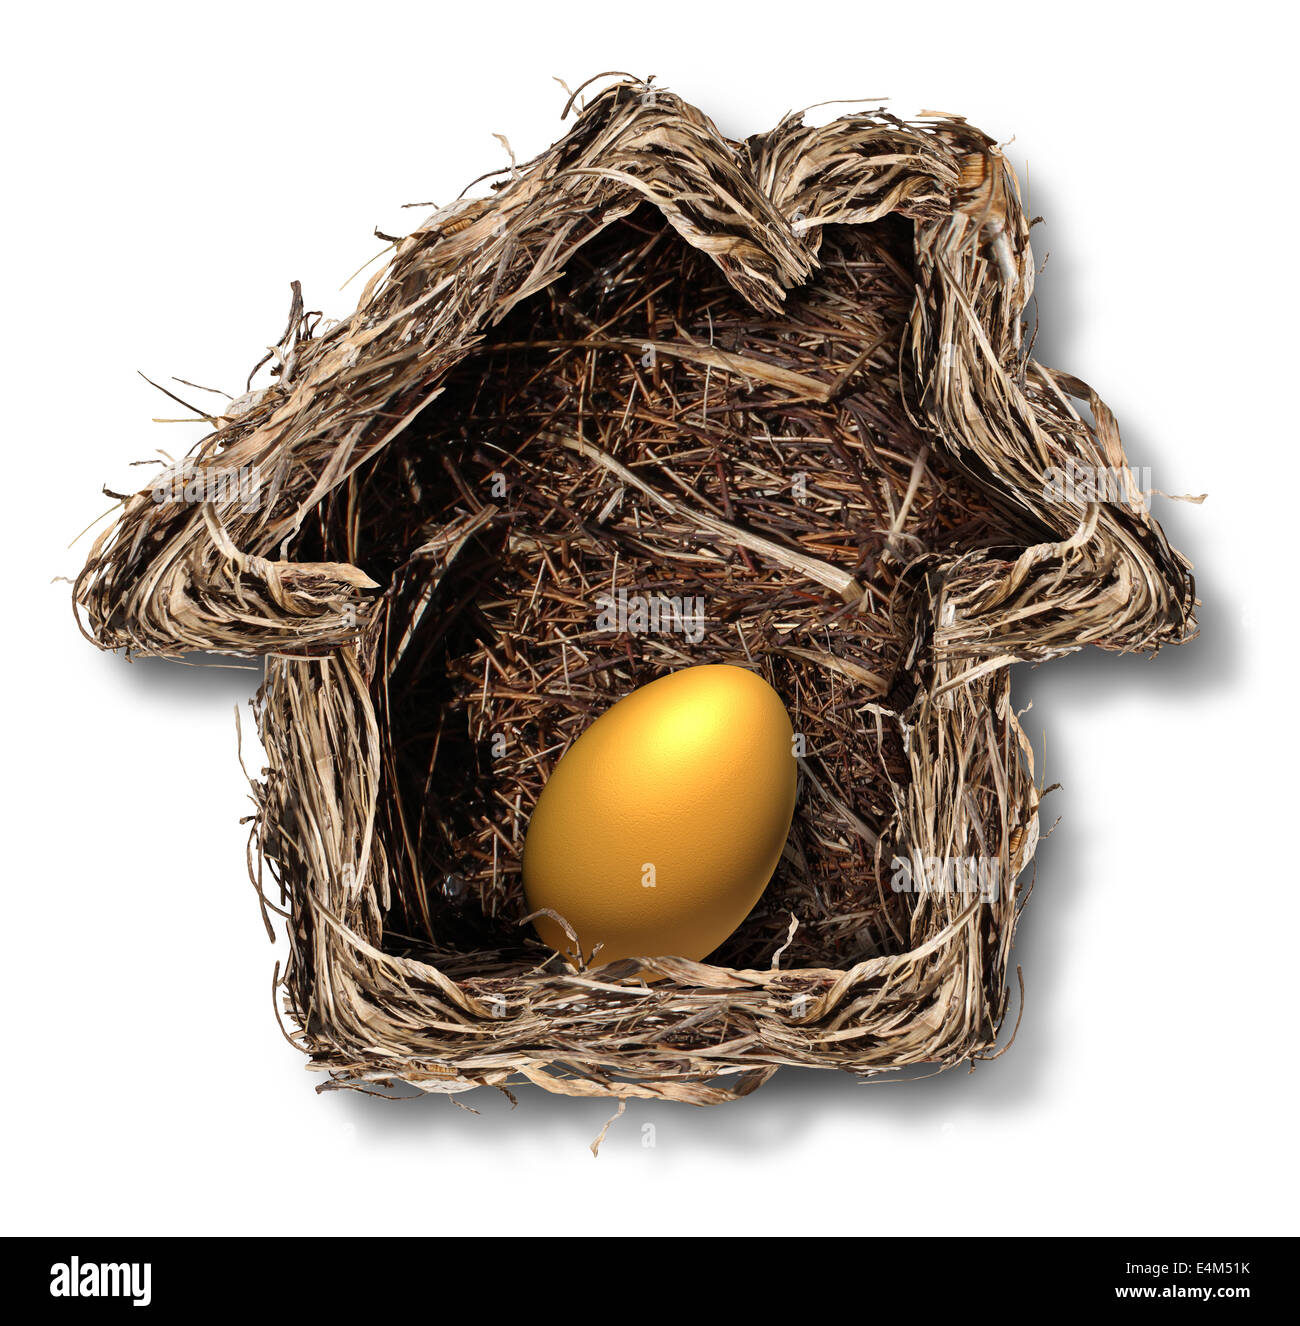 Home finanze e residenziale simbolo azionario come un nido di uccelli conformata come una casa di famiglia con un oro uovo dentro come una metafora per la pinna Foto Stock